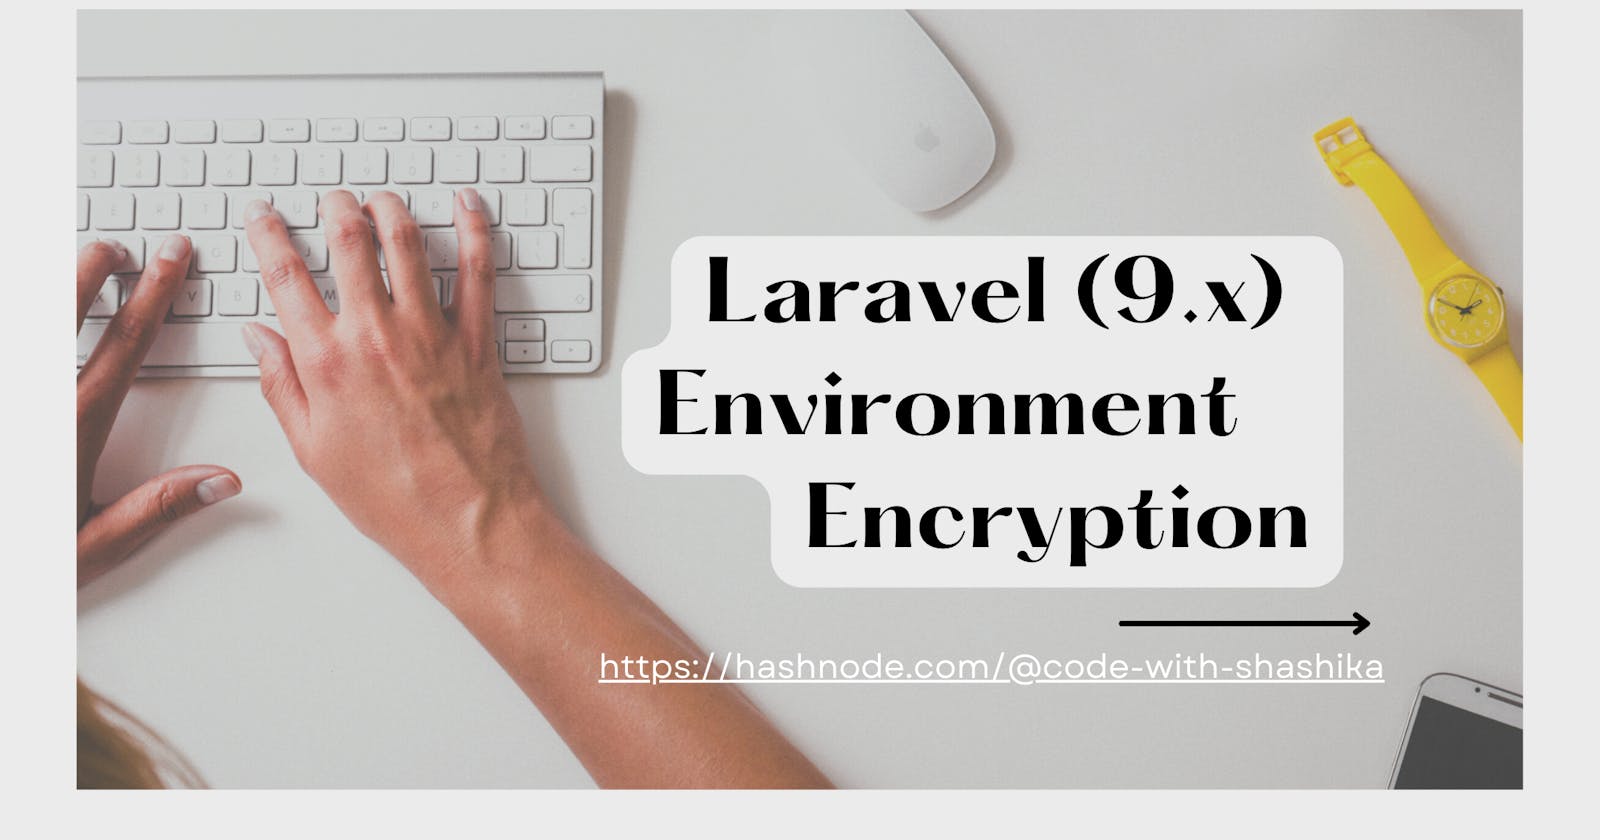 Encrypting Laravel (9.x) .env file